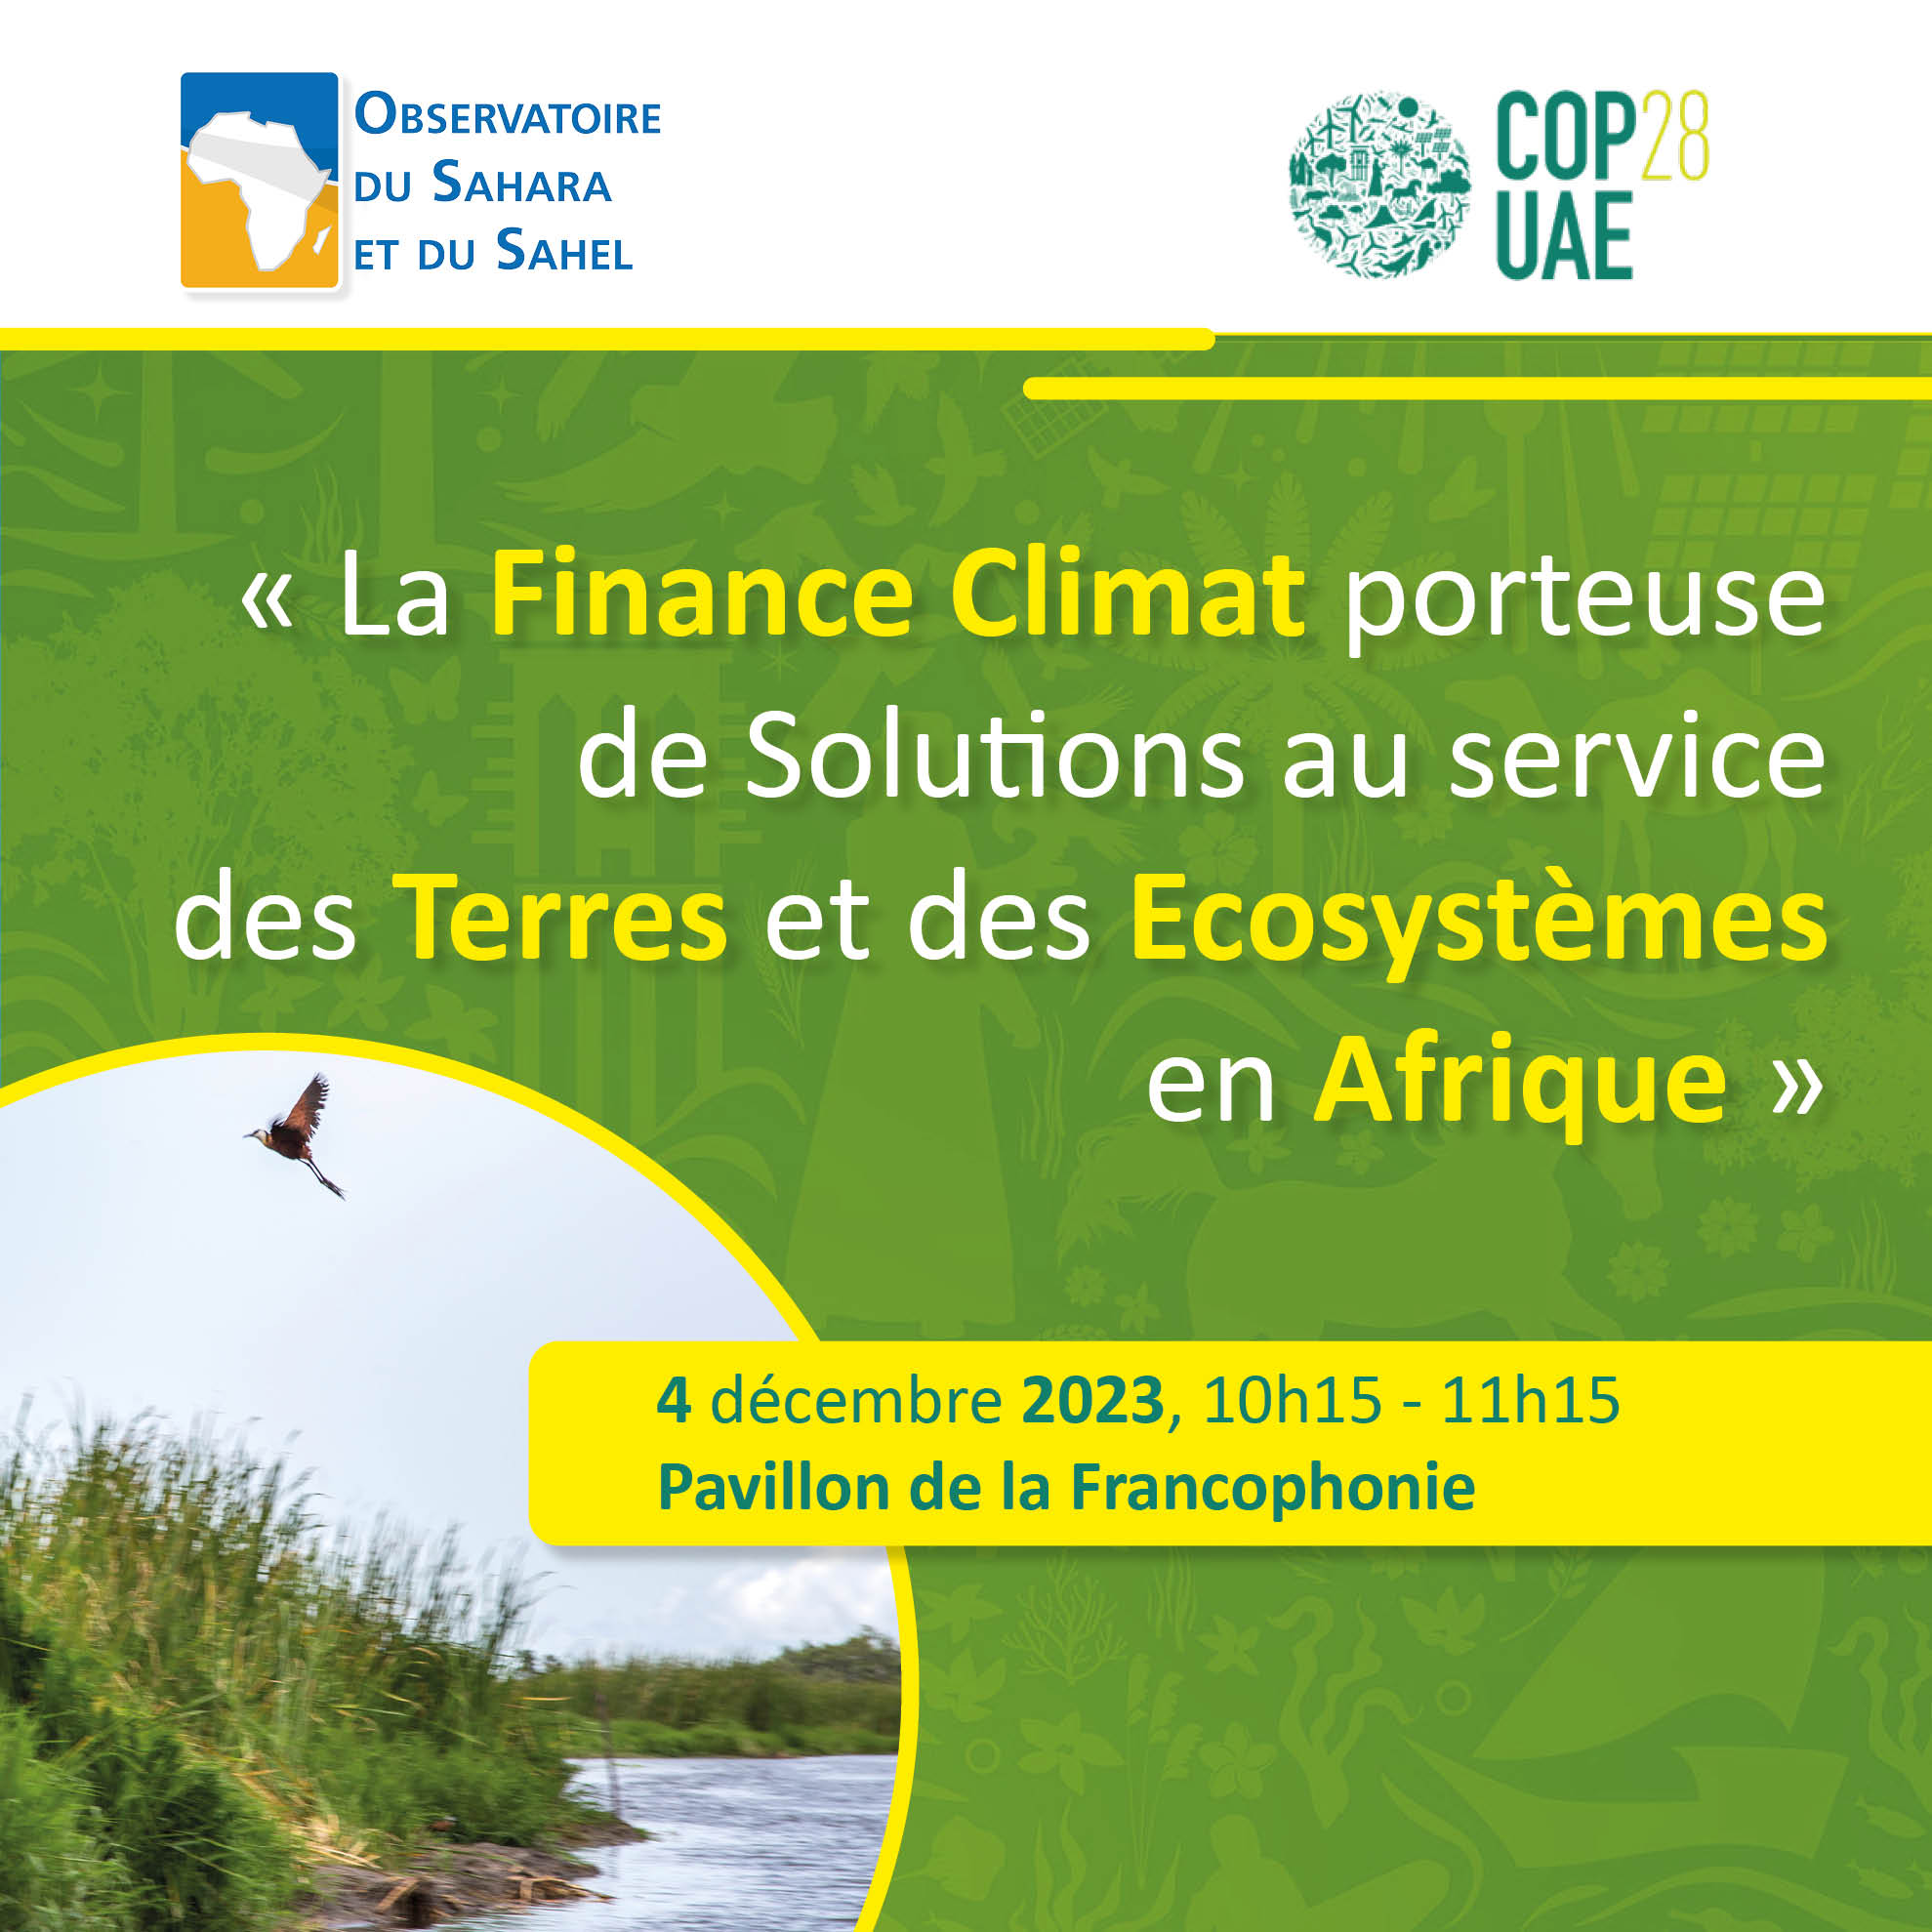  L'OSS organise un side event intitulé « La Finance Climat porteuse de Solutions au service des Terres et des Ecosystèmes en Afrique », le 4 décembre de 10h15 à 11h15 au pavillon de la Francophonie